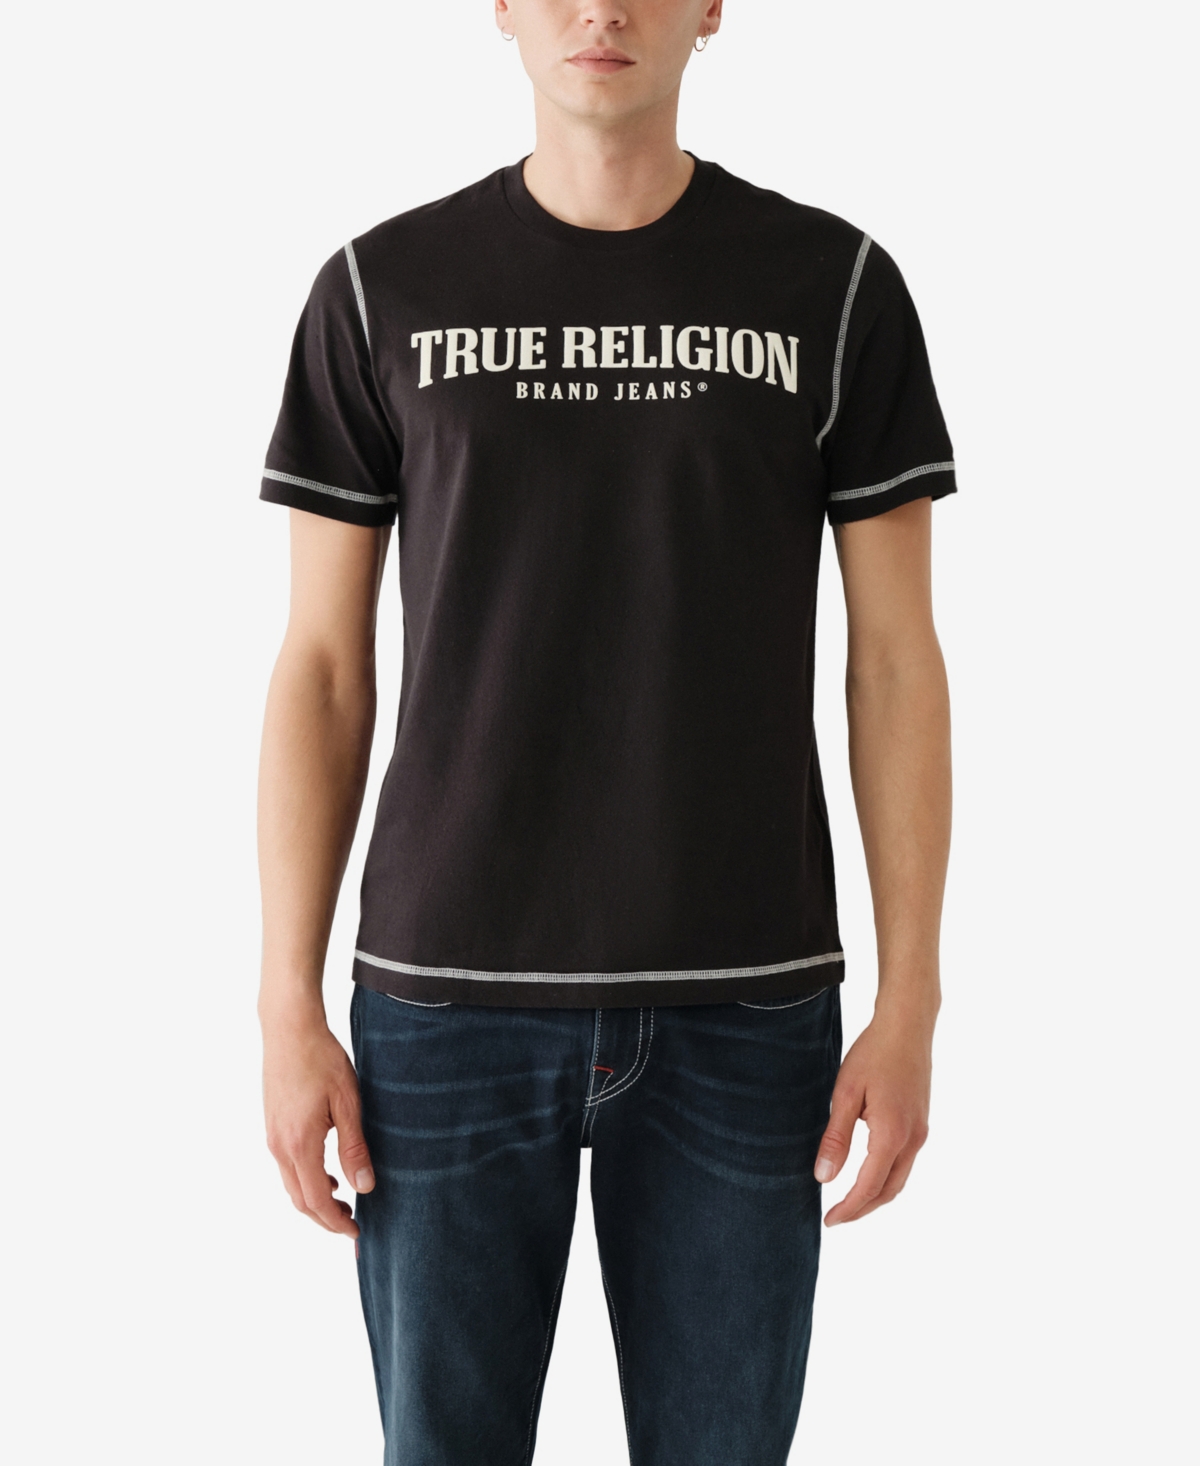 TRUE RELIGION MEN'S SHORT SLEEVES FLATLOCK ARCH T-SHIRT